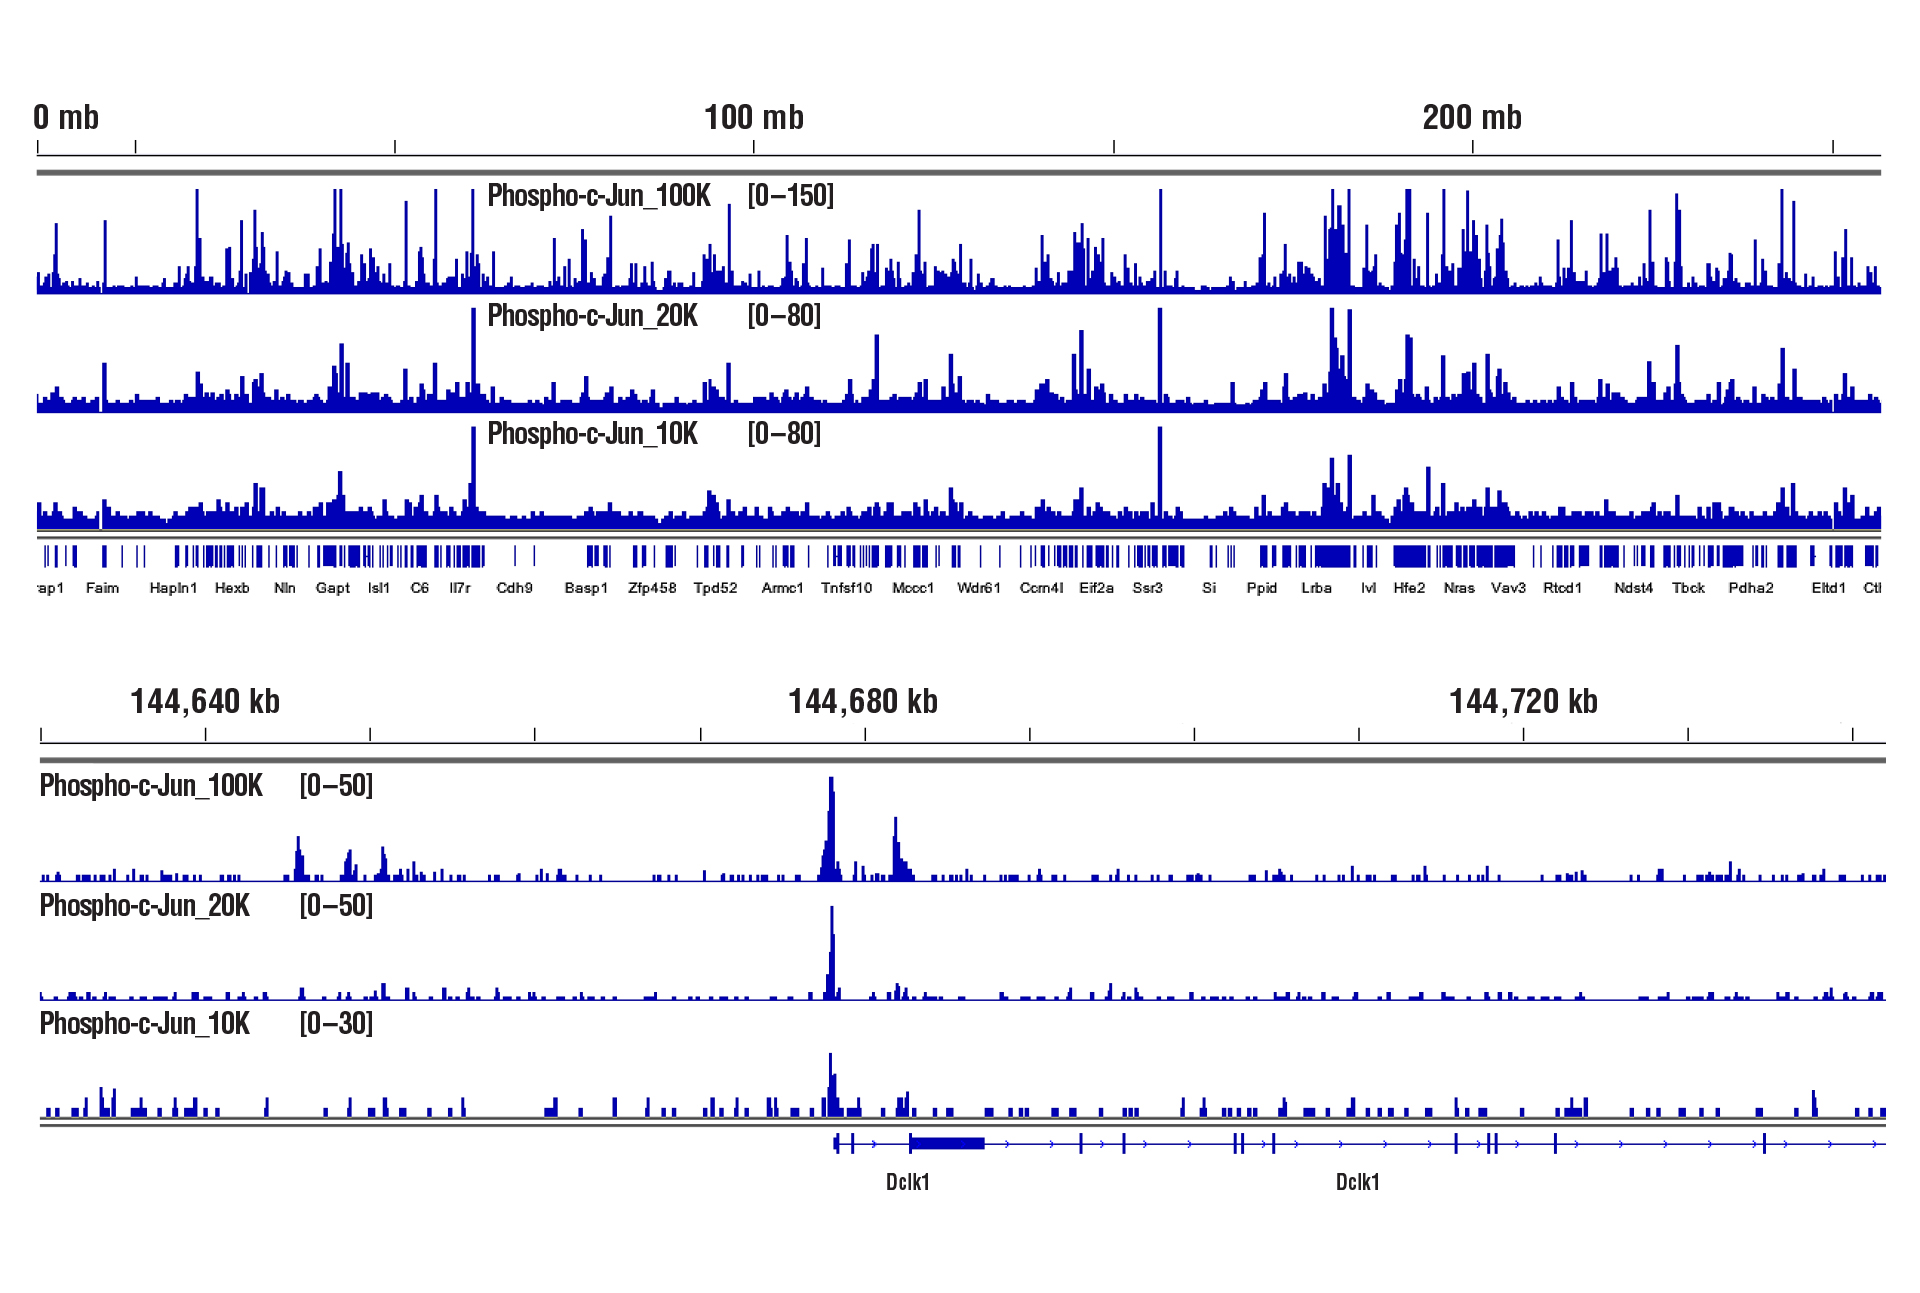 Phospho-c-Jun NGS data for 100K, 20K & 10K cells